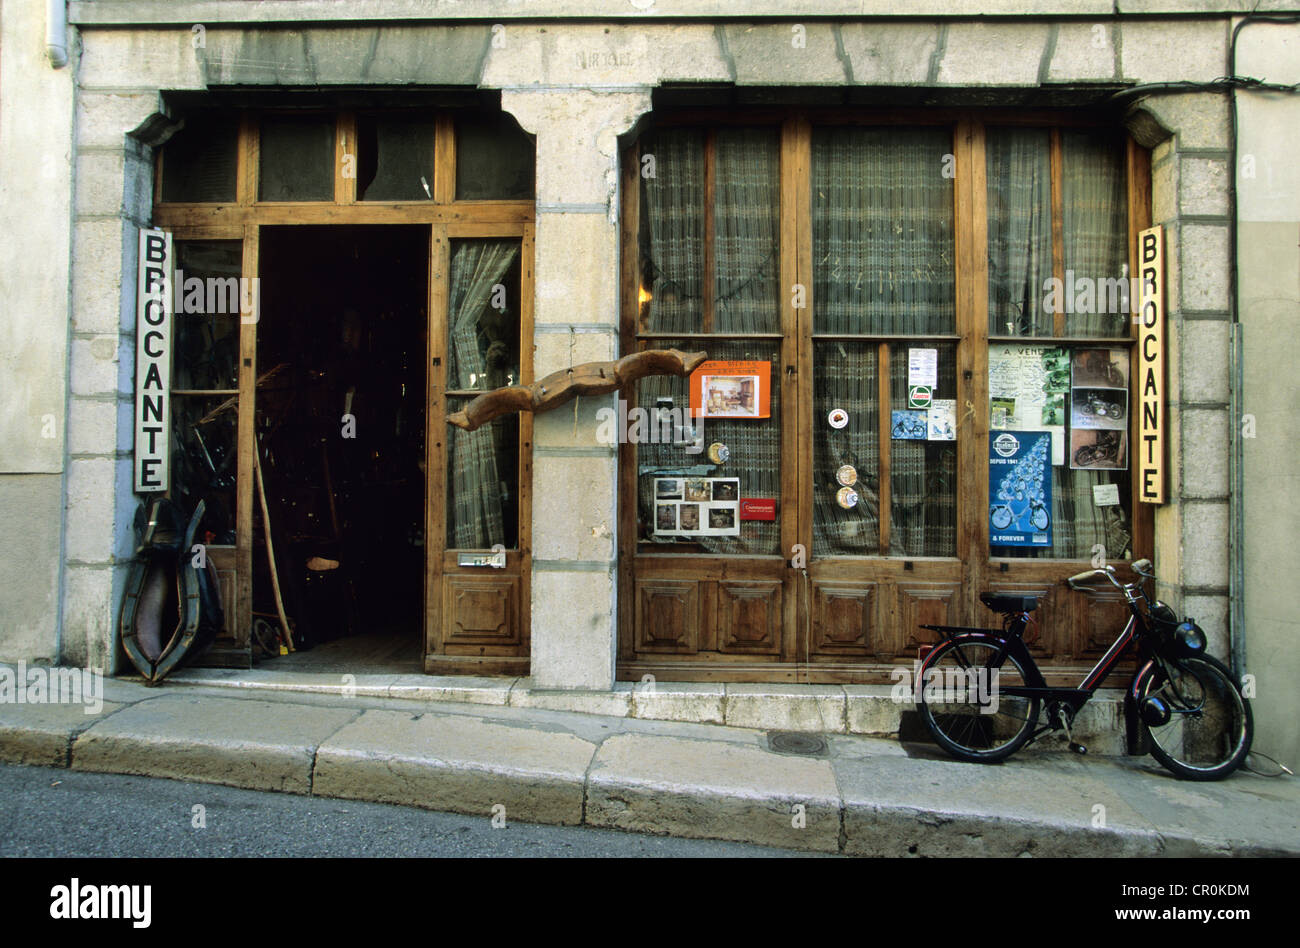 France, Isere, Pont en Royans, antic shop Stock Photo